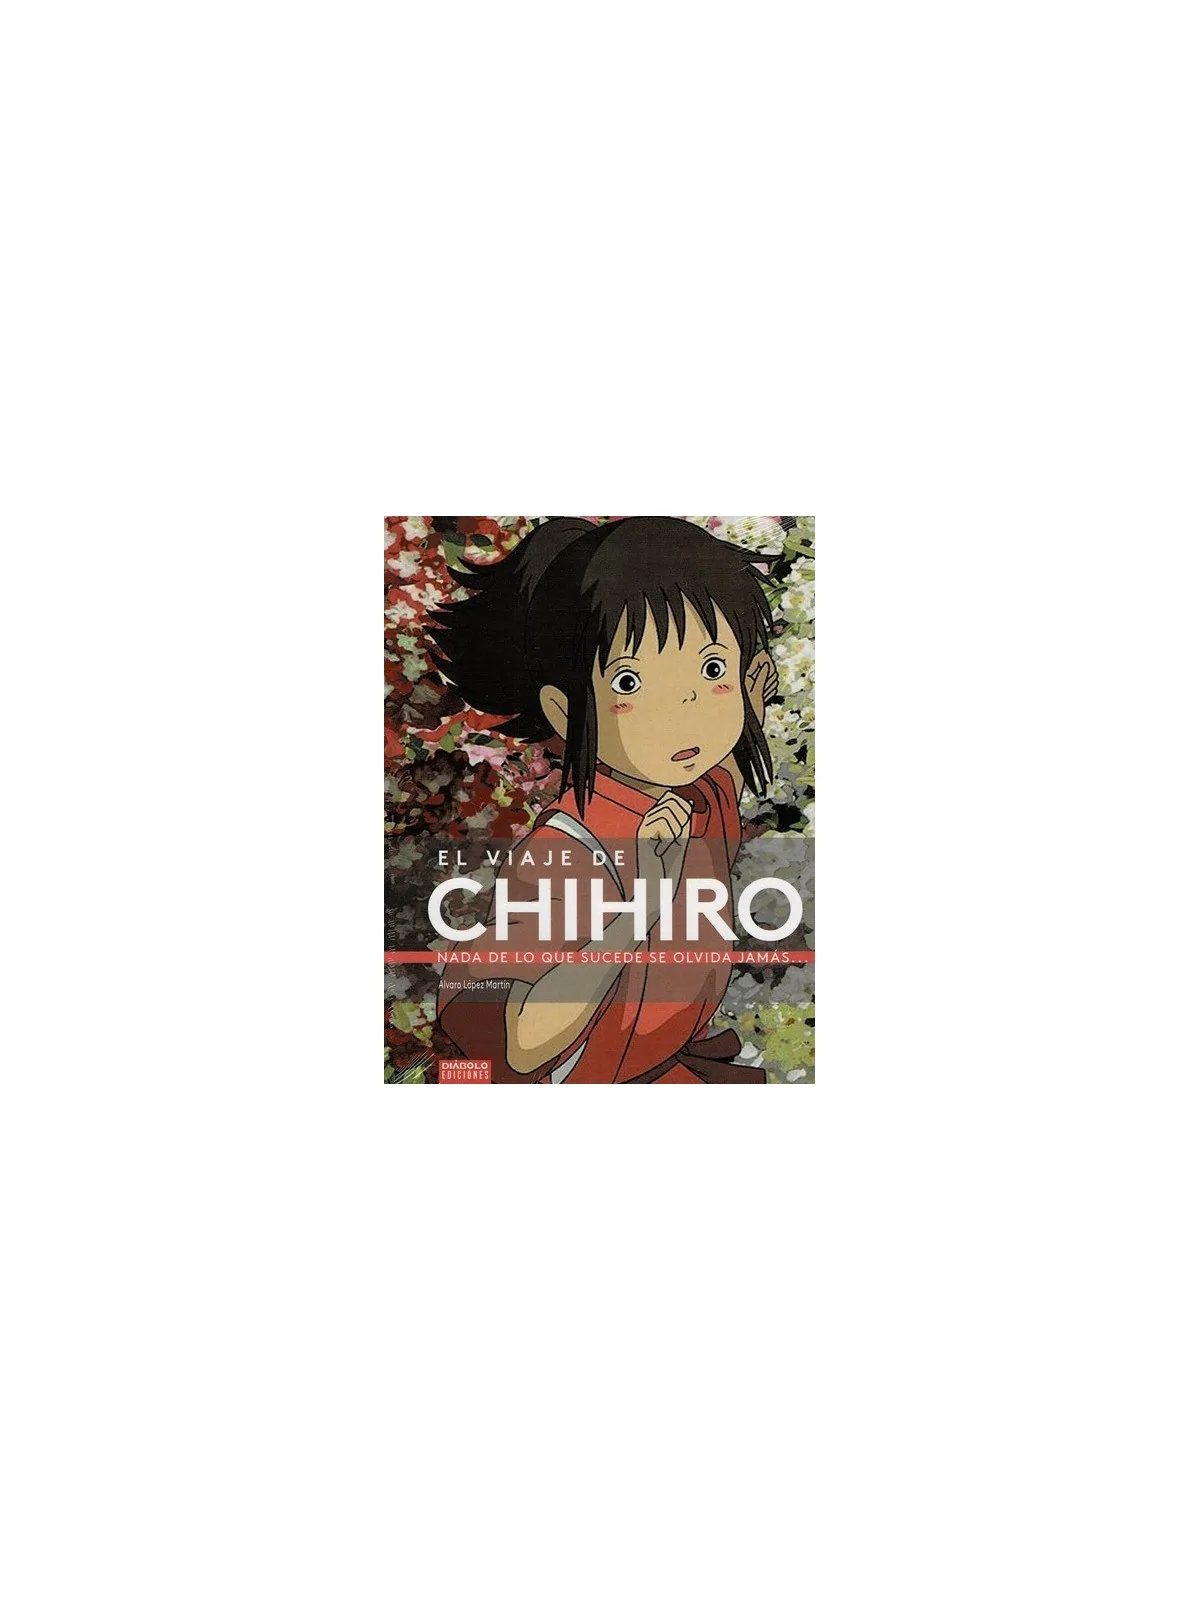 Comprar El Viaje de Chihiro: Nada de lo que Sucede se Olvida Jamás bar